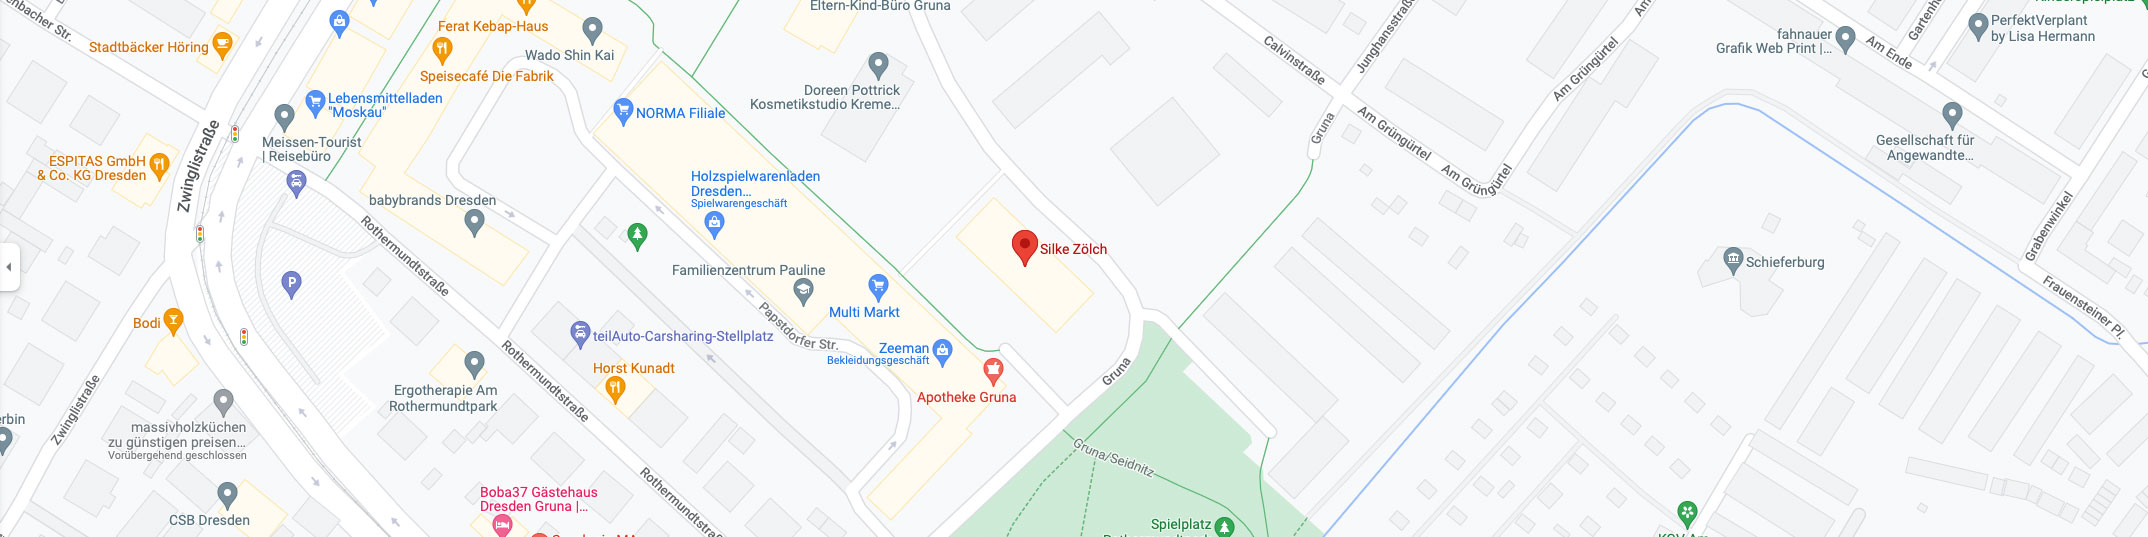 Google-Map-Bild: Frauenärztin Silke Zölch, Dresden (Kartendaten © 2022 GeoBasis-DE/BKG (© 2009), Google)